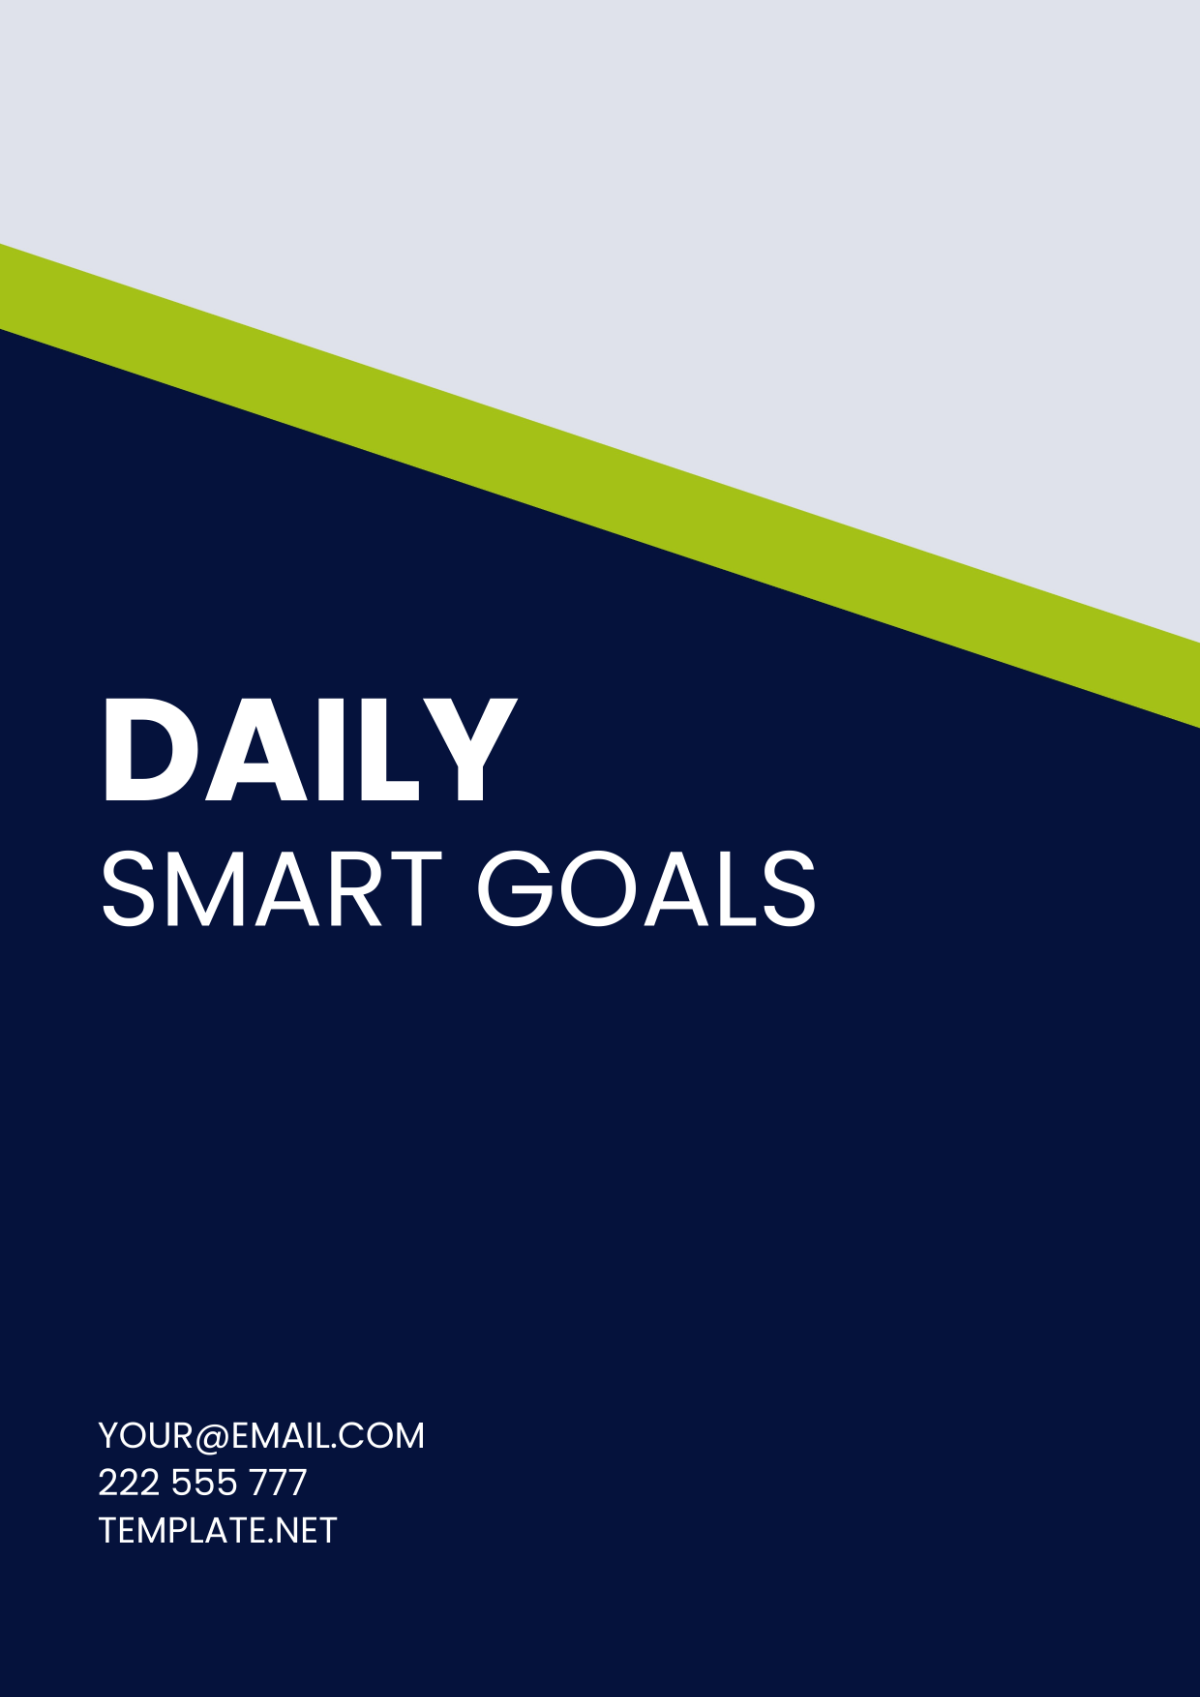 Daily SMART Goals Template